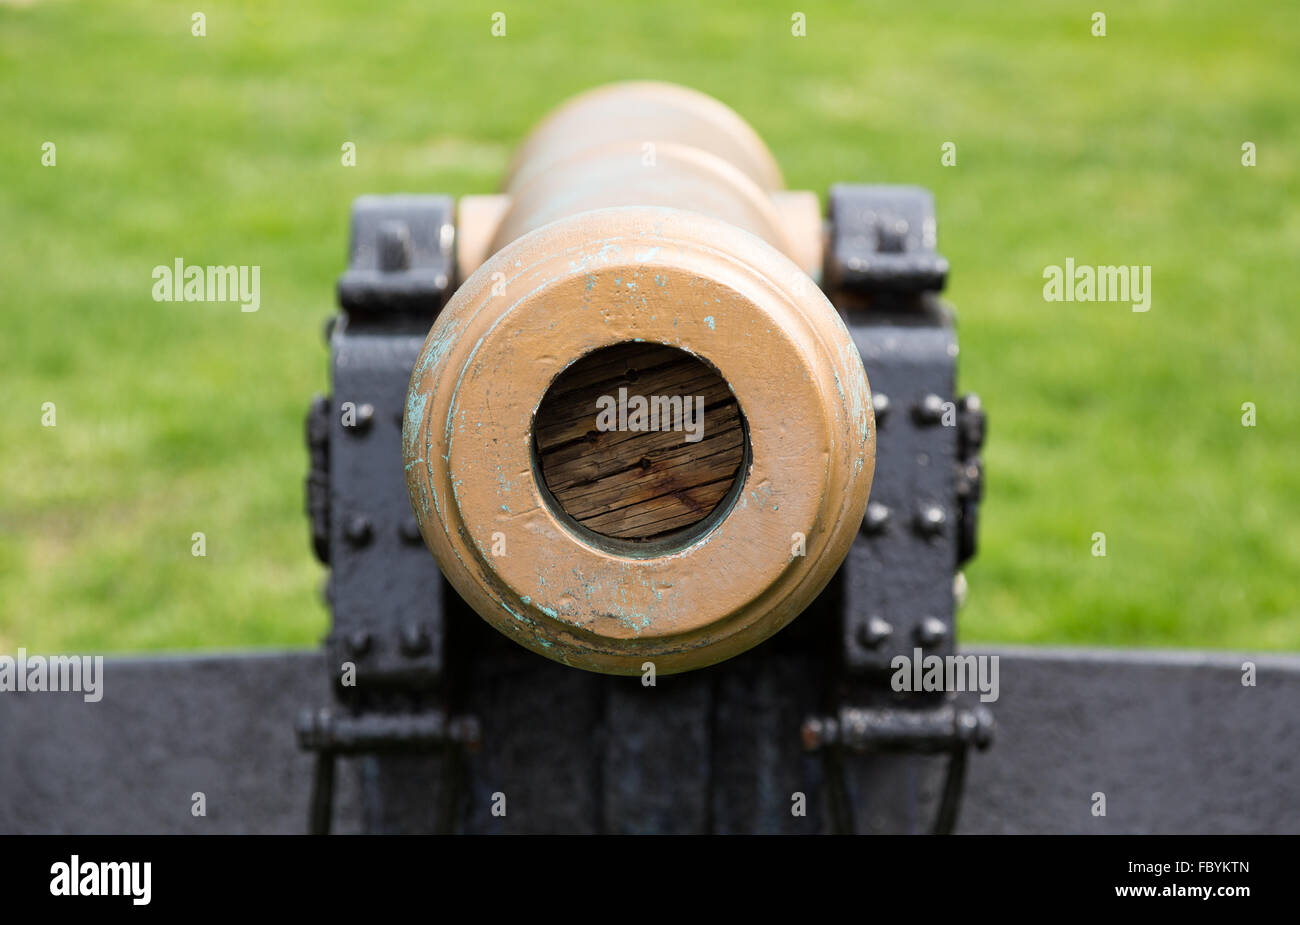 Alte militärische Kanone zeigt direkt auf den Betrachter Stockfoto